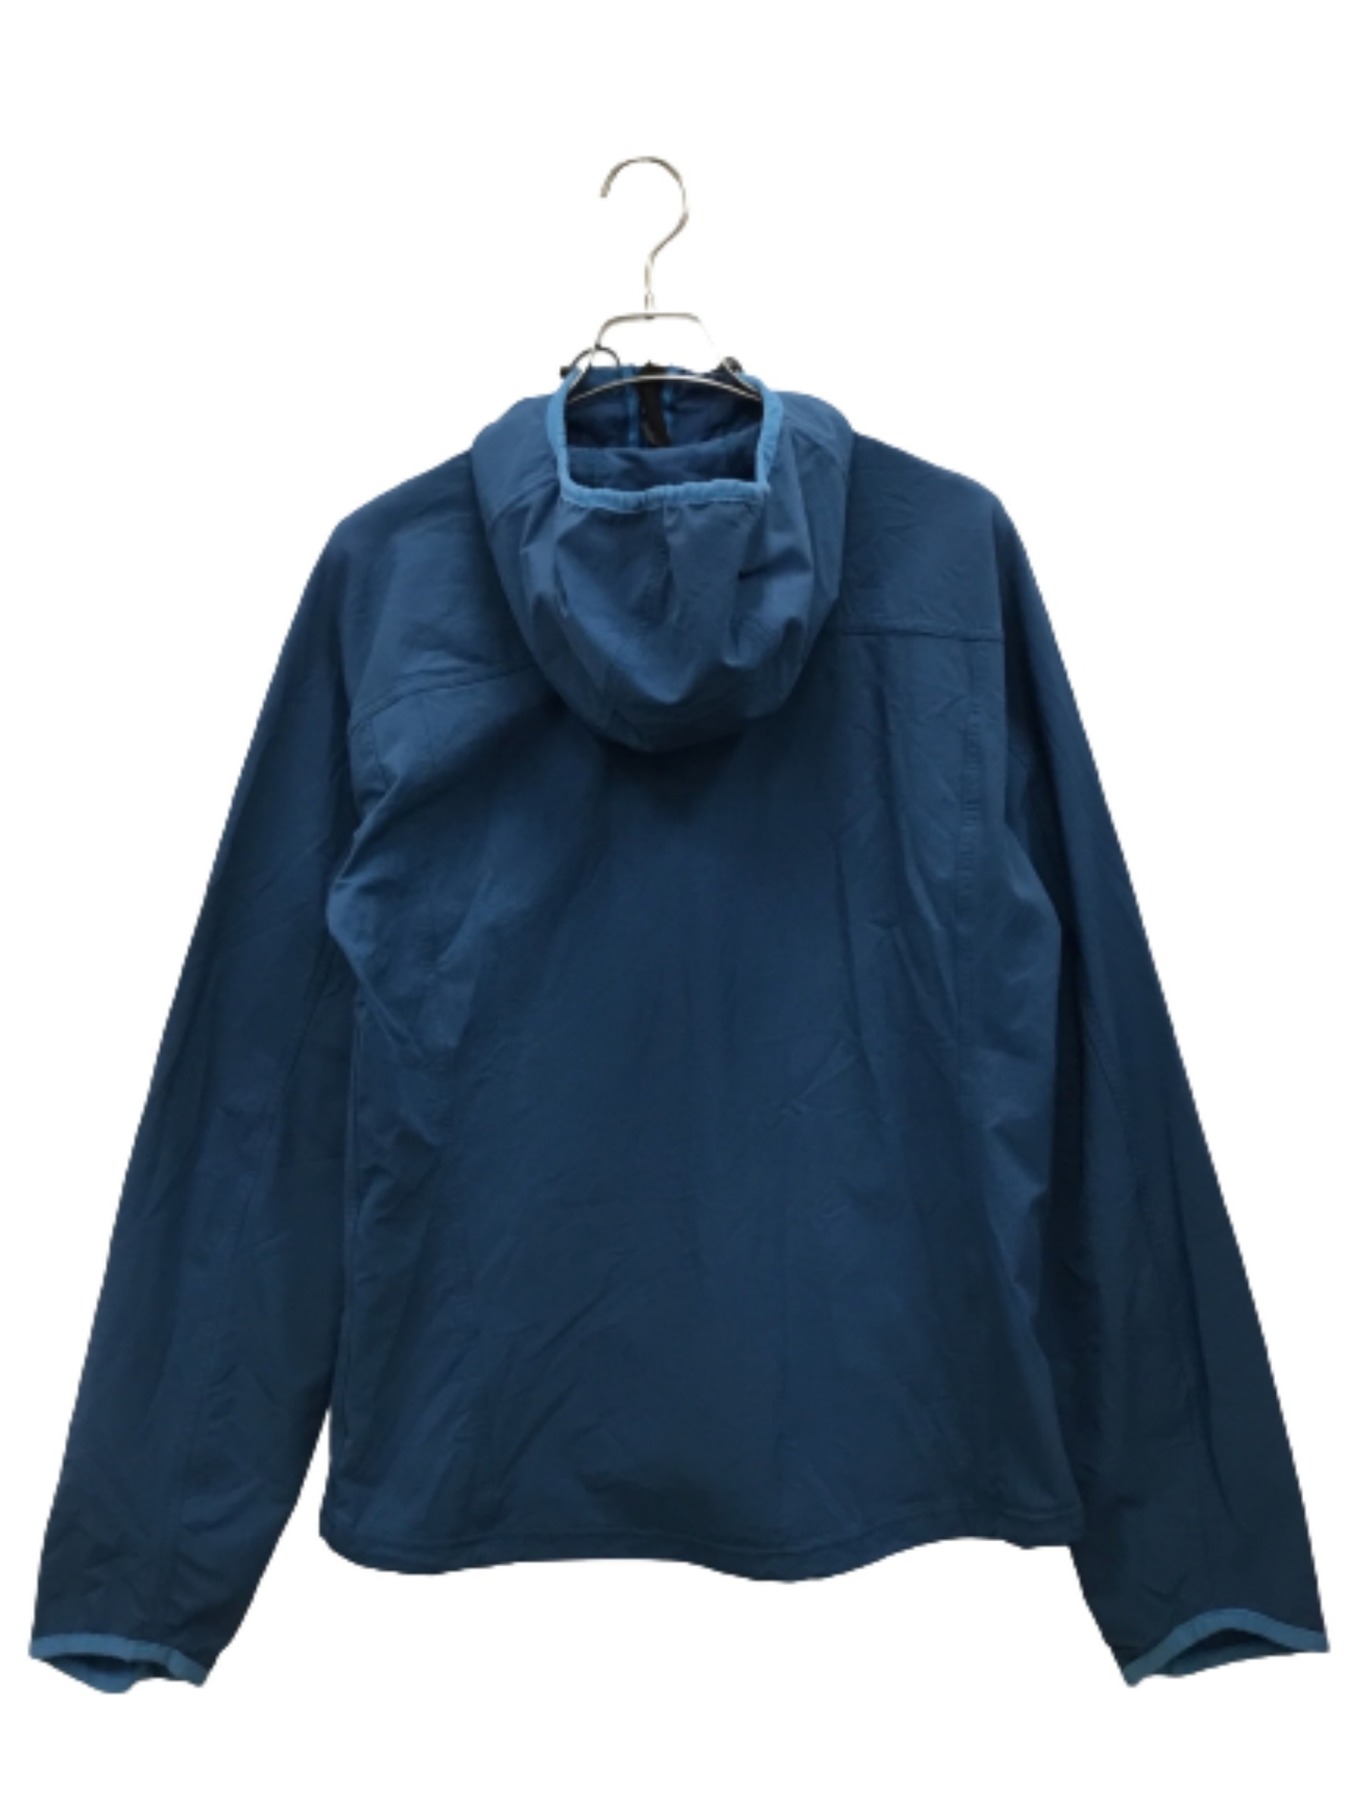 HAGLOFS (ホグロフス) ジャケット ブルー サイズ:M